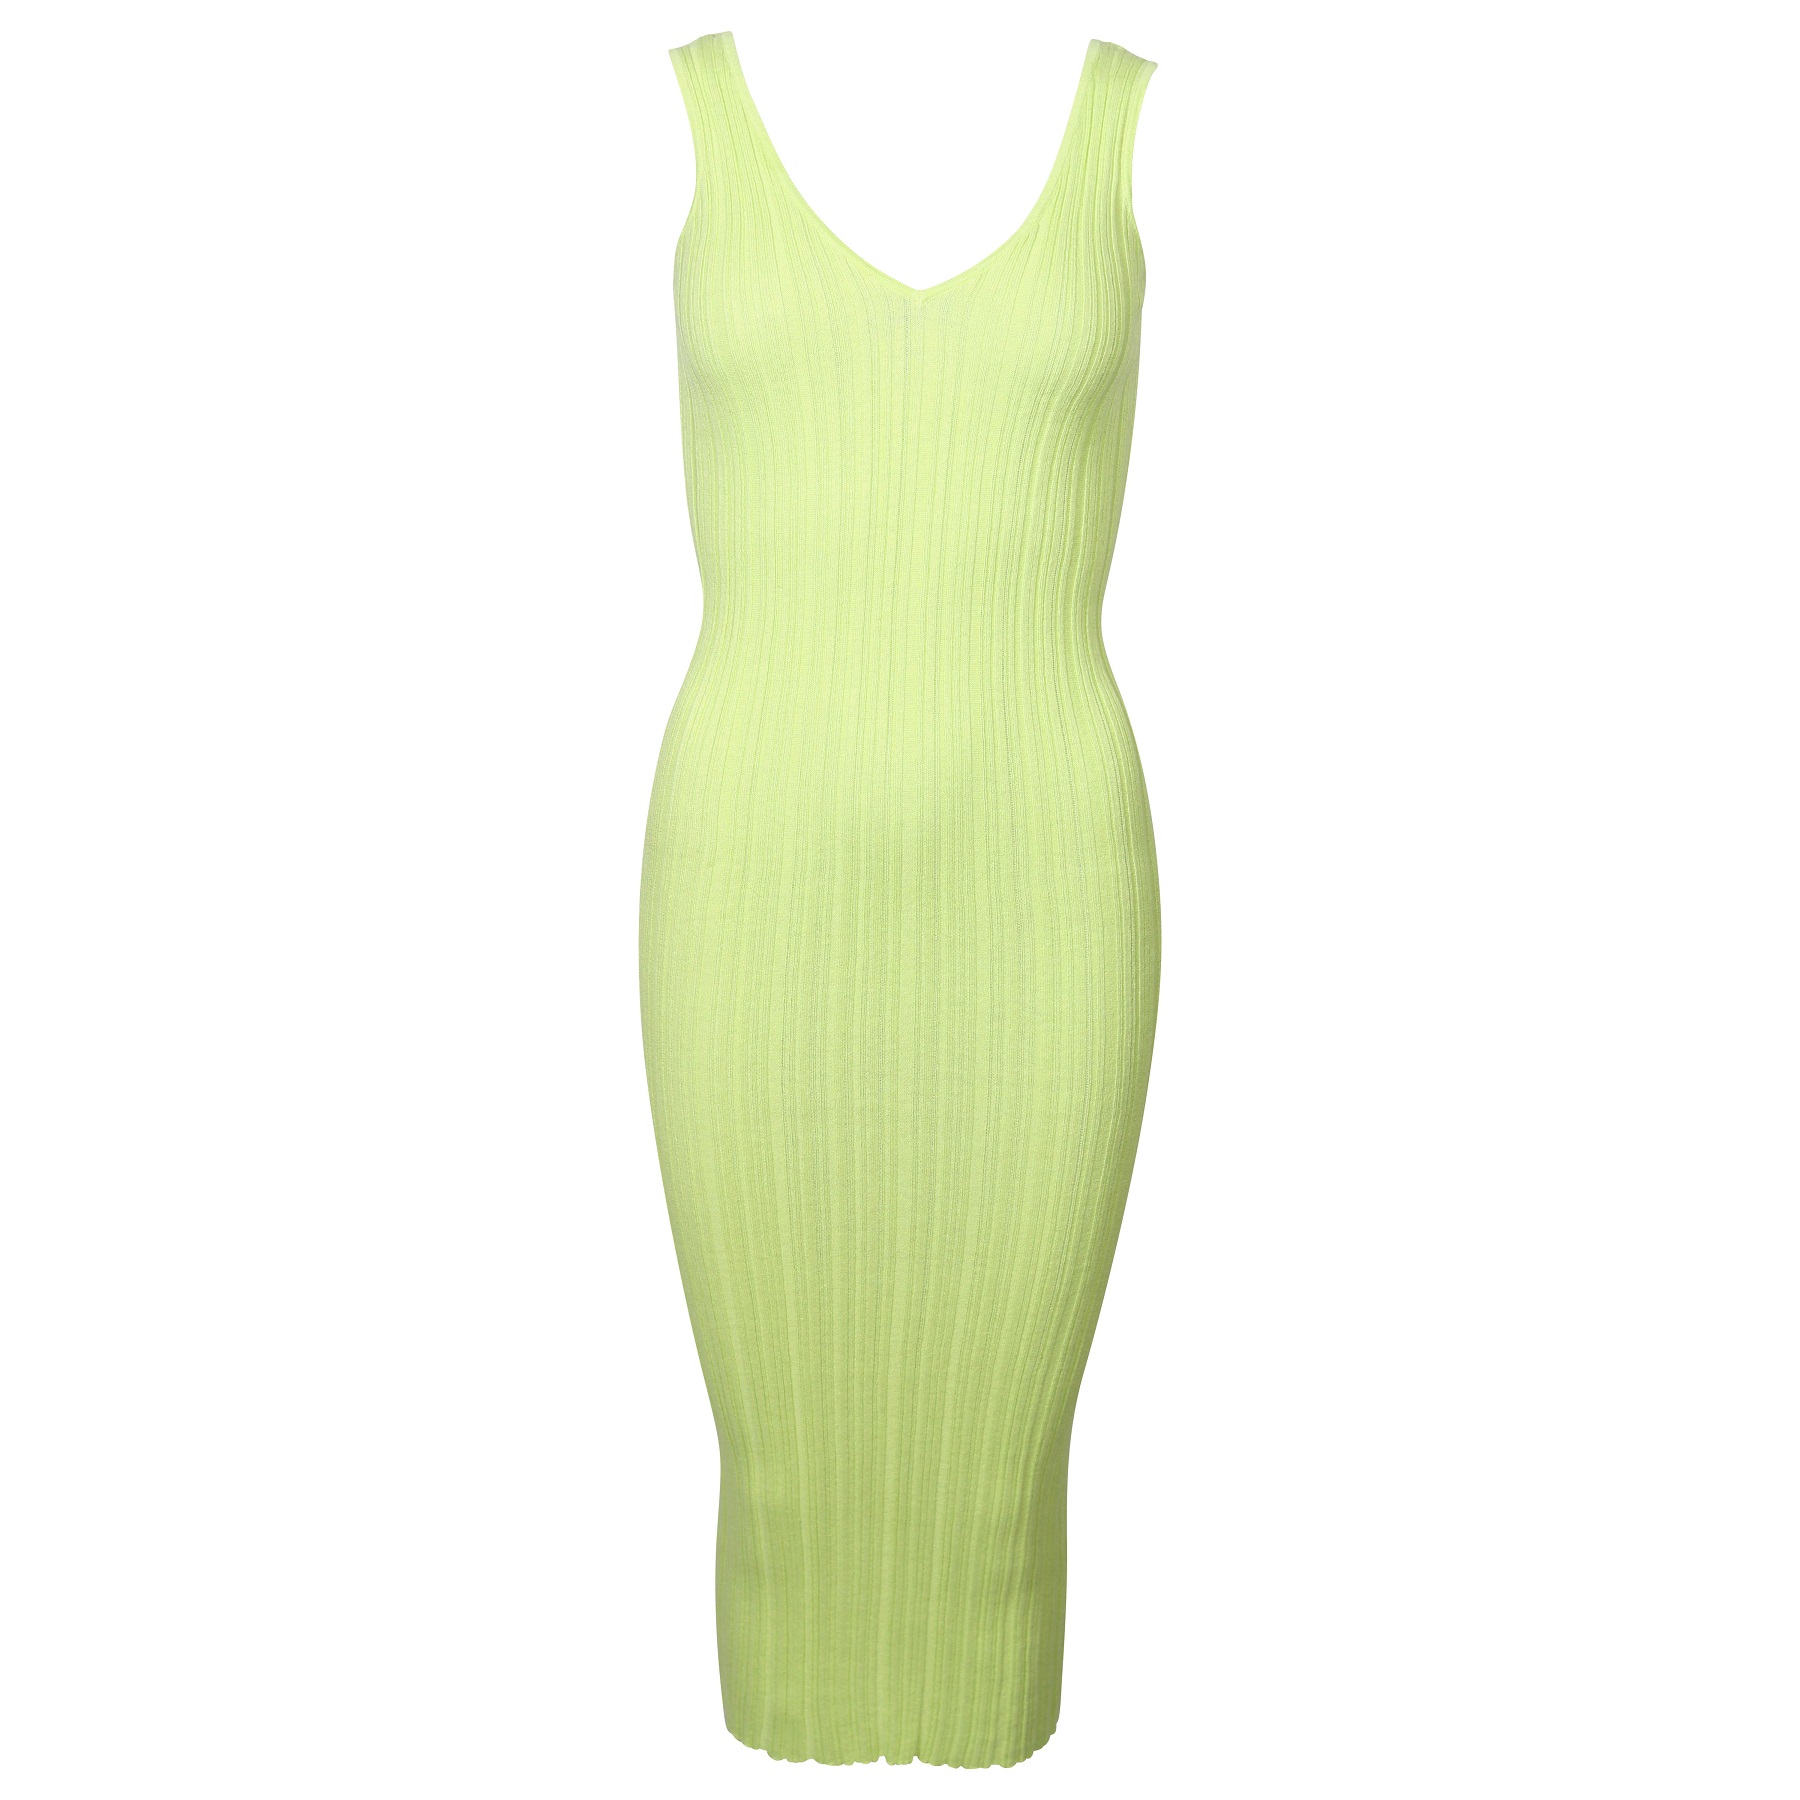 FLONA Knit Dress in Lime